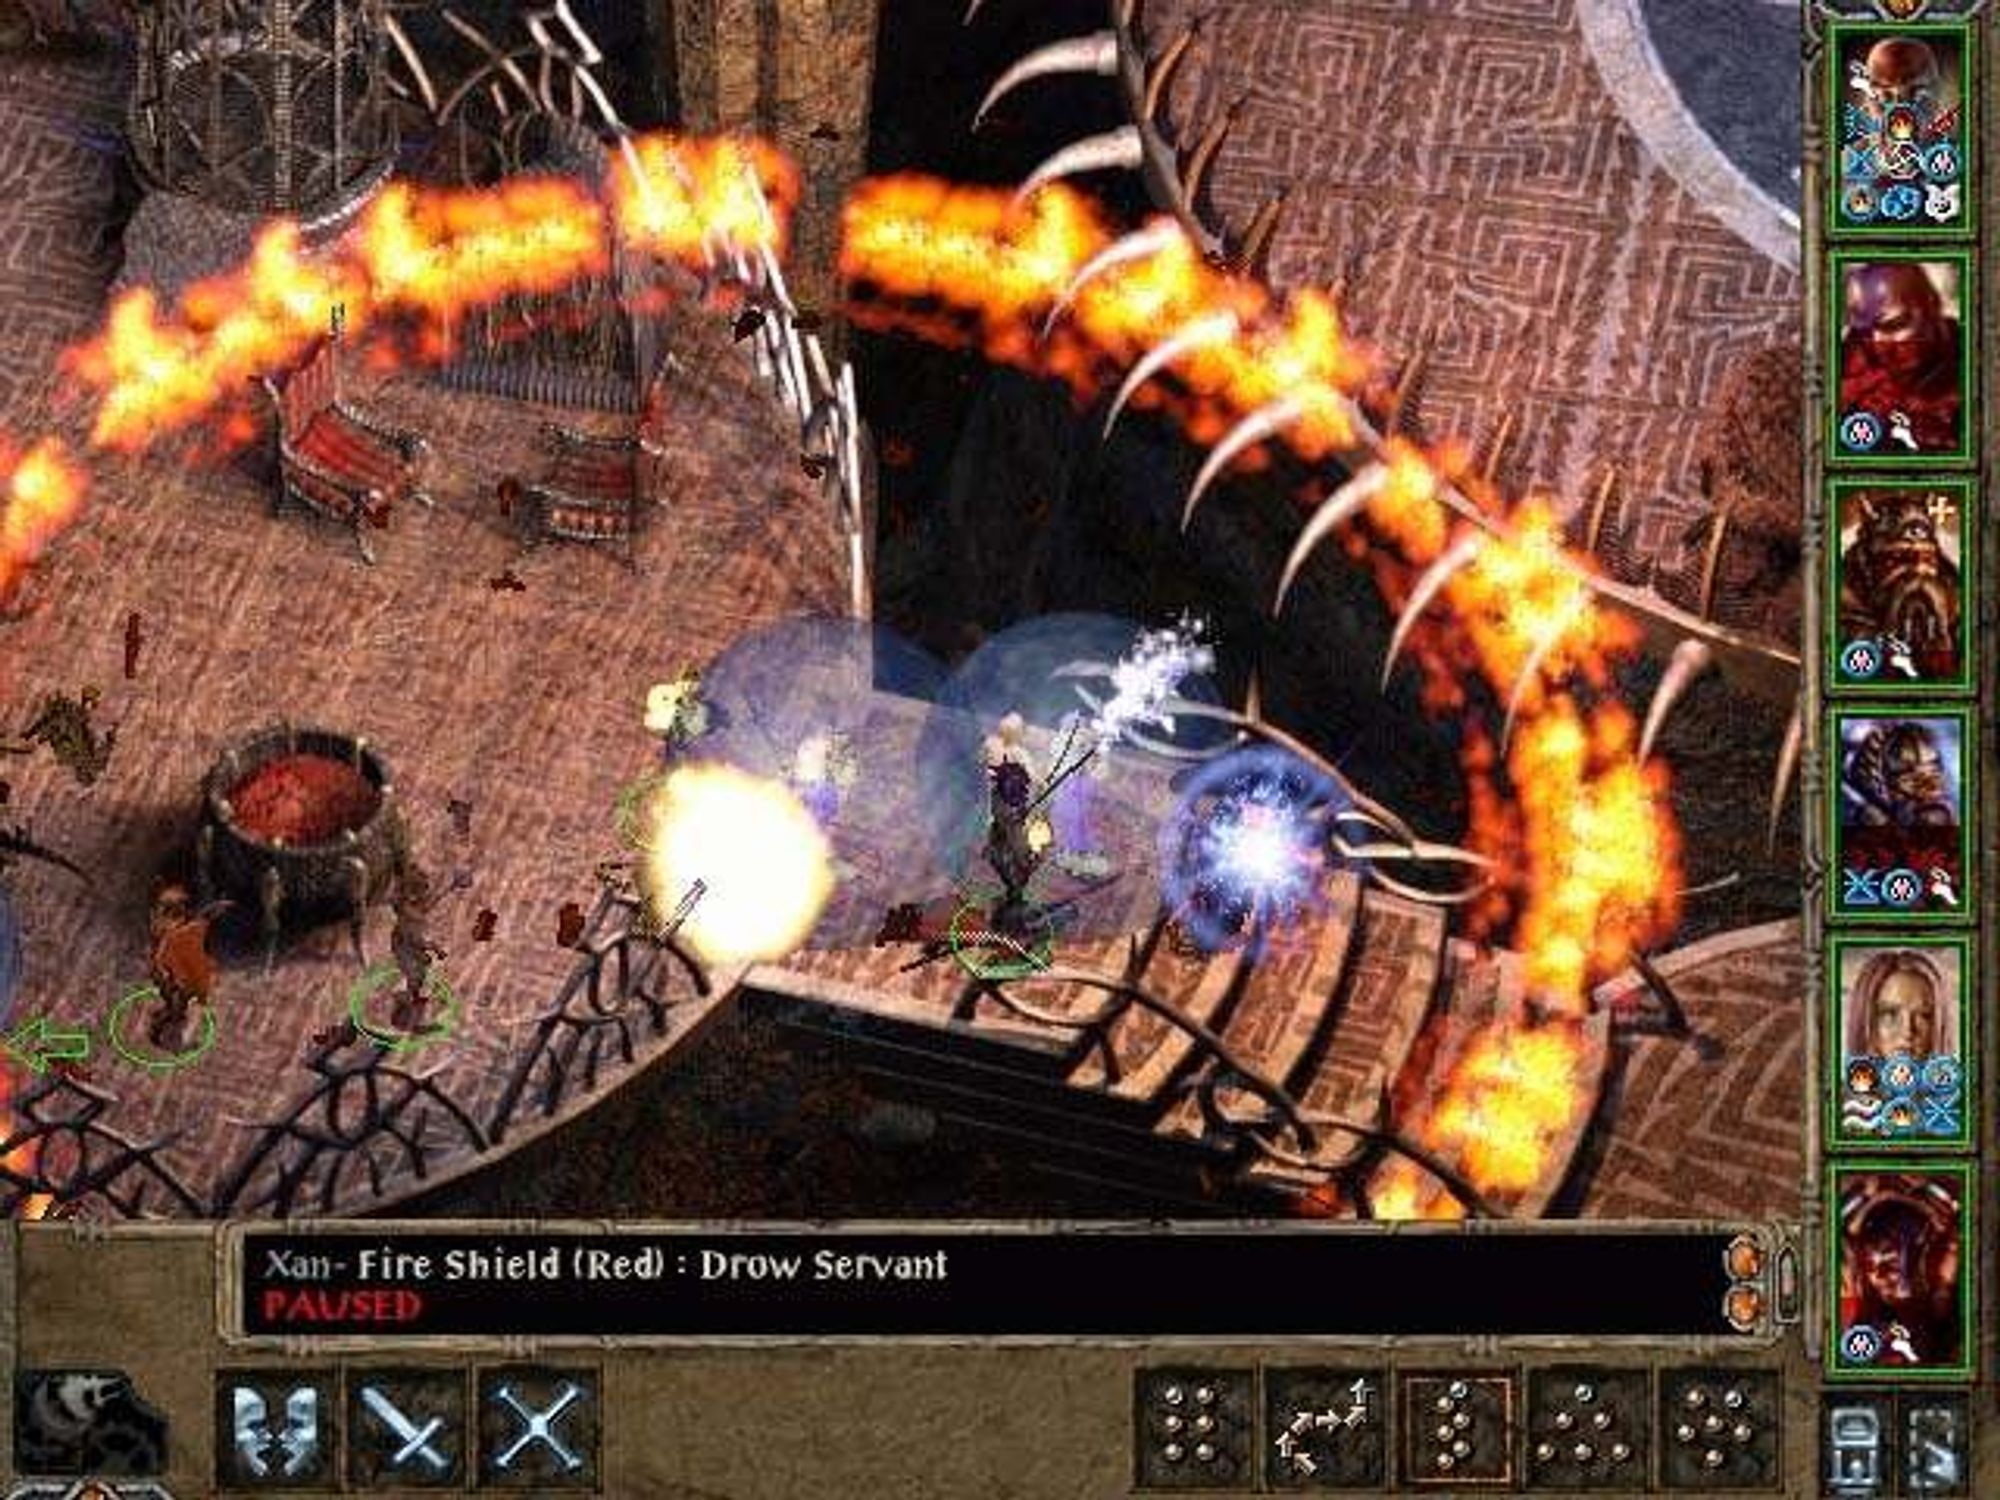 Игры похожие на балдурс. Baldur's Gate 2. Балдурс гейт 2 геймплей. 2.2 Baldur's Gate II: Shadows of AMN. Балдурс гейт 1 геймплей.